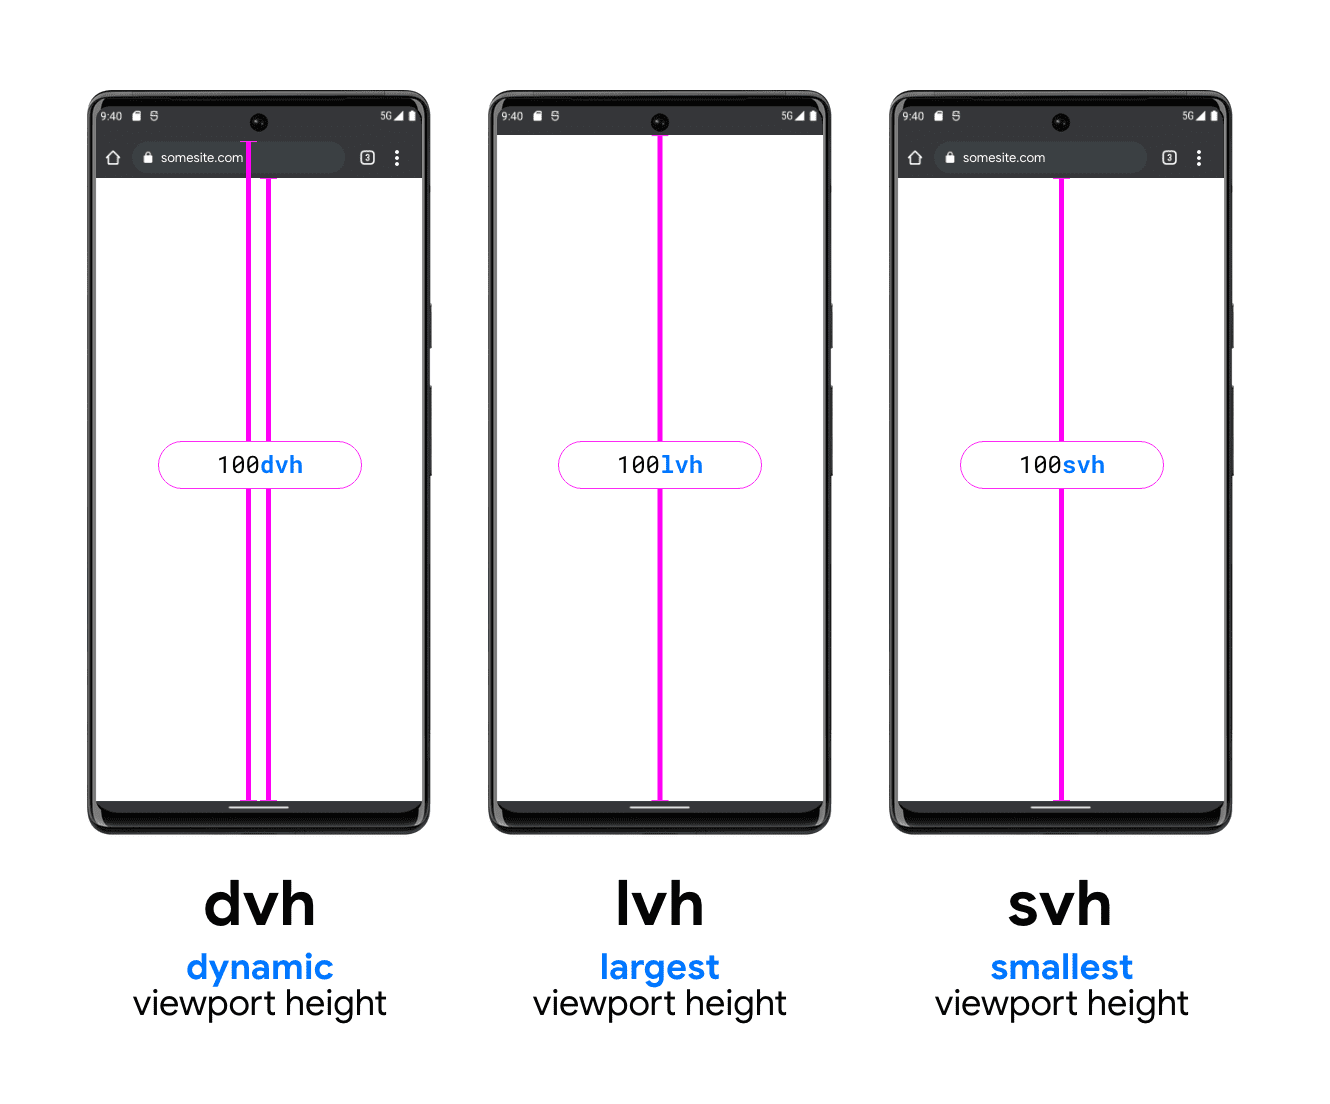 圖中有三支手機，有助於描繪 DVH、LVH 和 SVH。DVH 範例手機有兩條垂直線，一條介於搜尋列底部和可視區域底部之間，以及搜尋列上方 (系統狀態列下方) 至可視區域底部之間。DVH 長度為這兩種長度之一。LVH 顯示在中間，裝置狀態列底部與手機可視區域按鈕之間有一條線。最後一個是 SVH 單元範例，其中一行顯示從瀏覽器搜尋列底部到可視區域底部